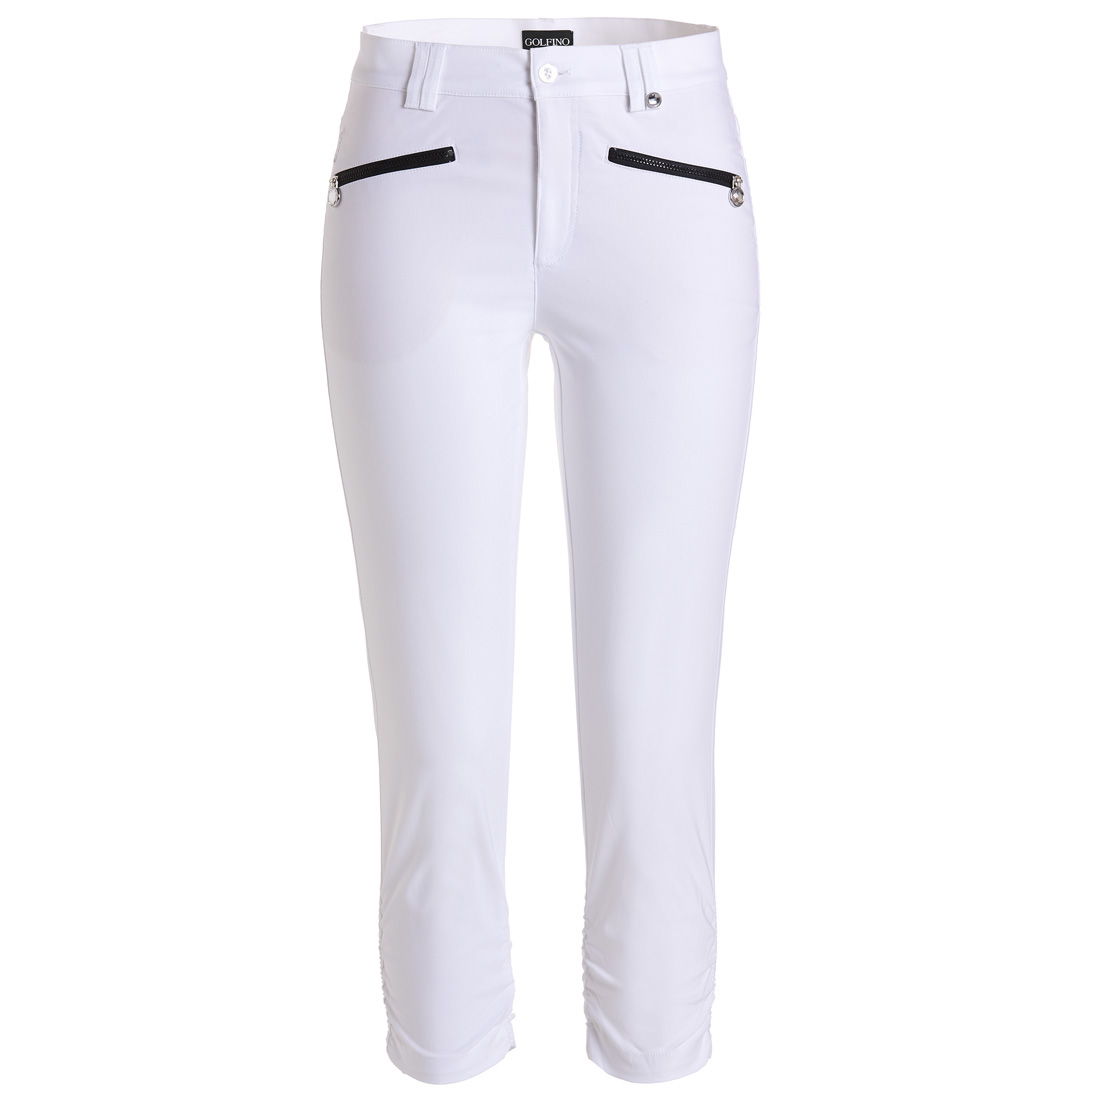 Pantaloni Capri donna da golf in tessuto elasticizzato e idrorepellente con funzione di protezione solare